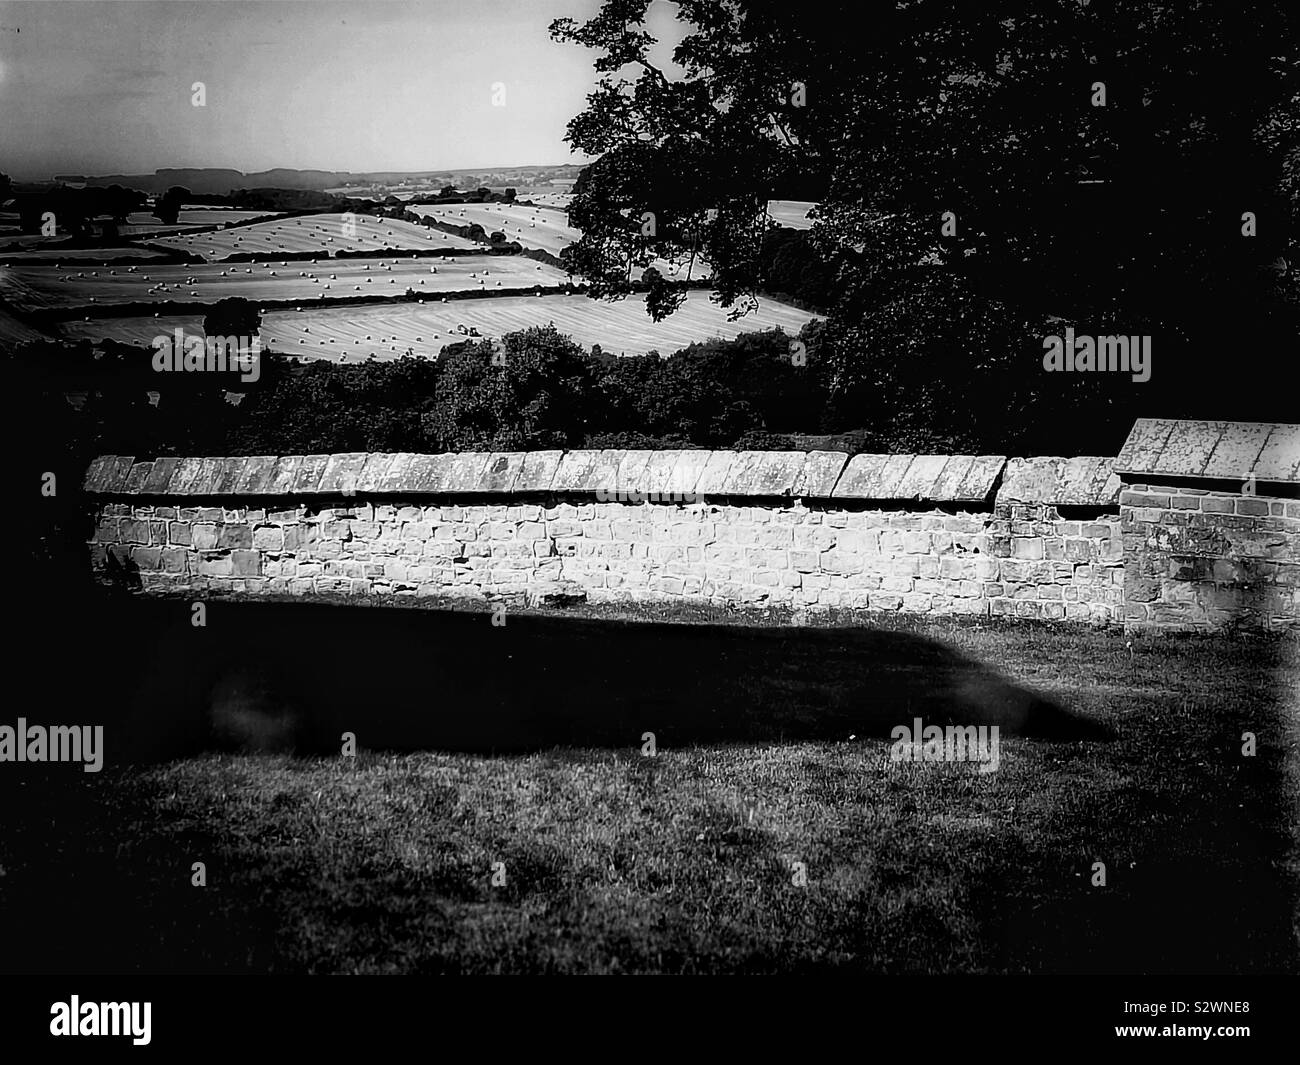 Immagine in bianco e nero del paese di lingua inglese scena con campi e balle di fieno Foto Stock